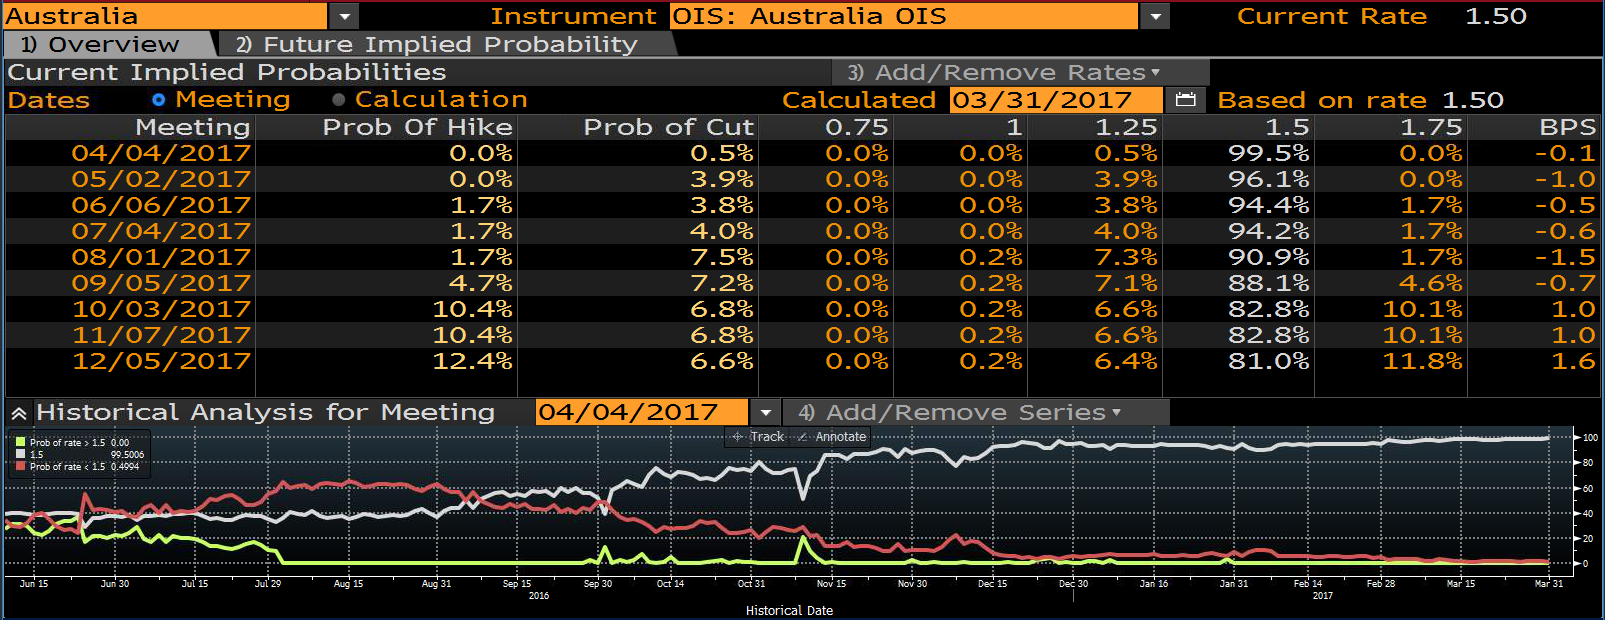 Prawdopodobieństwo podwyżki/obniżki stóp procentowej w Australii